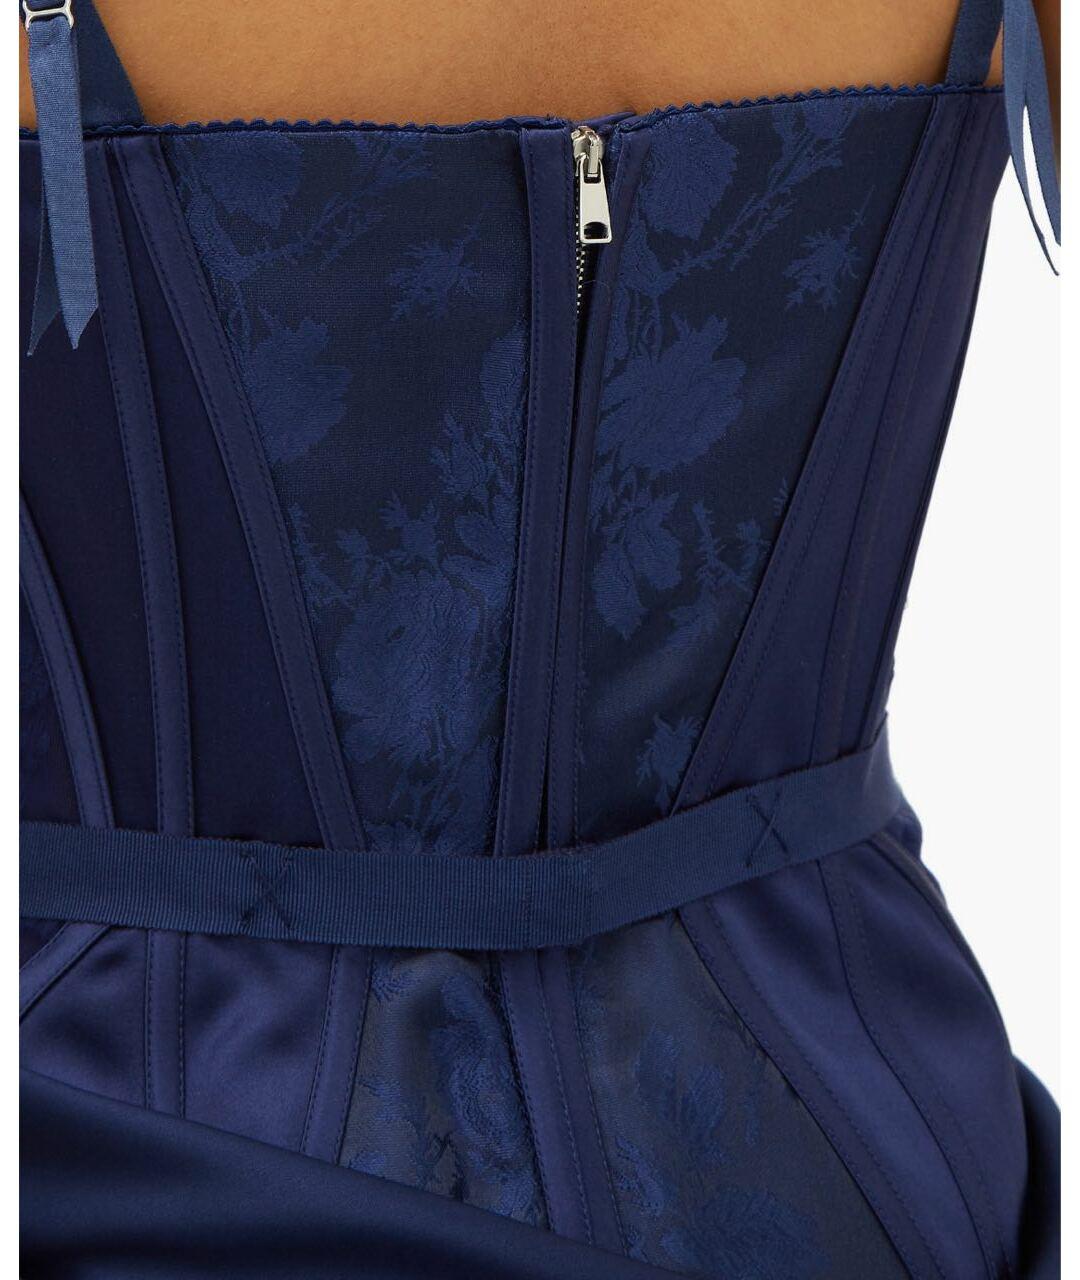 Black ALEXANDER McQueen NAVY BLUE EVENING CORSET DRESS 40